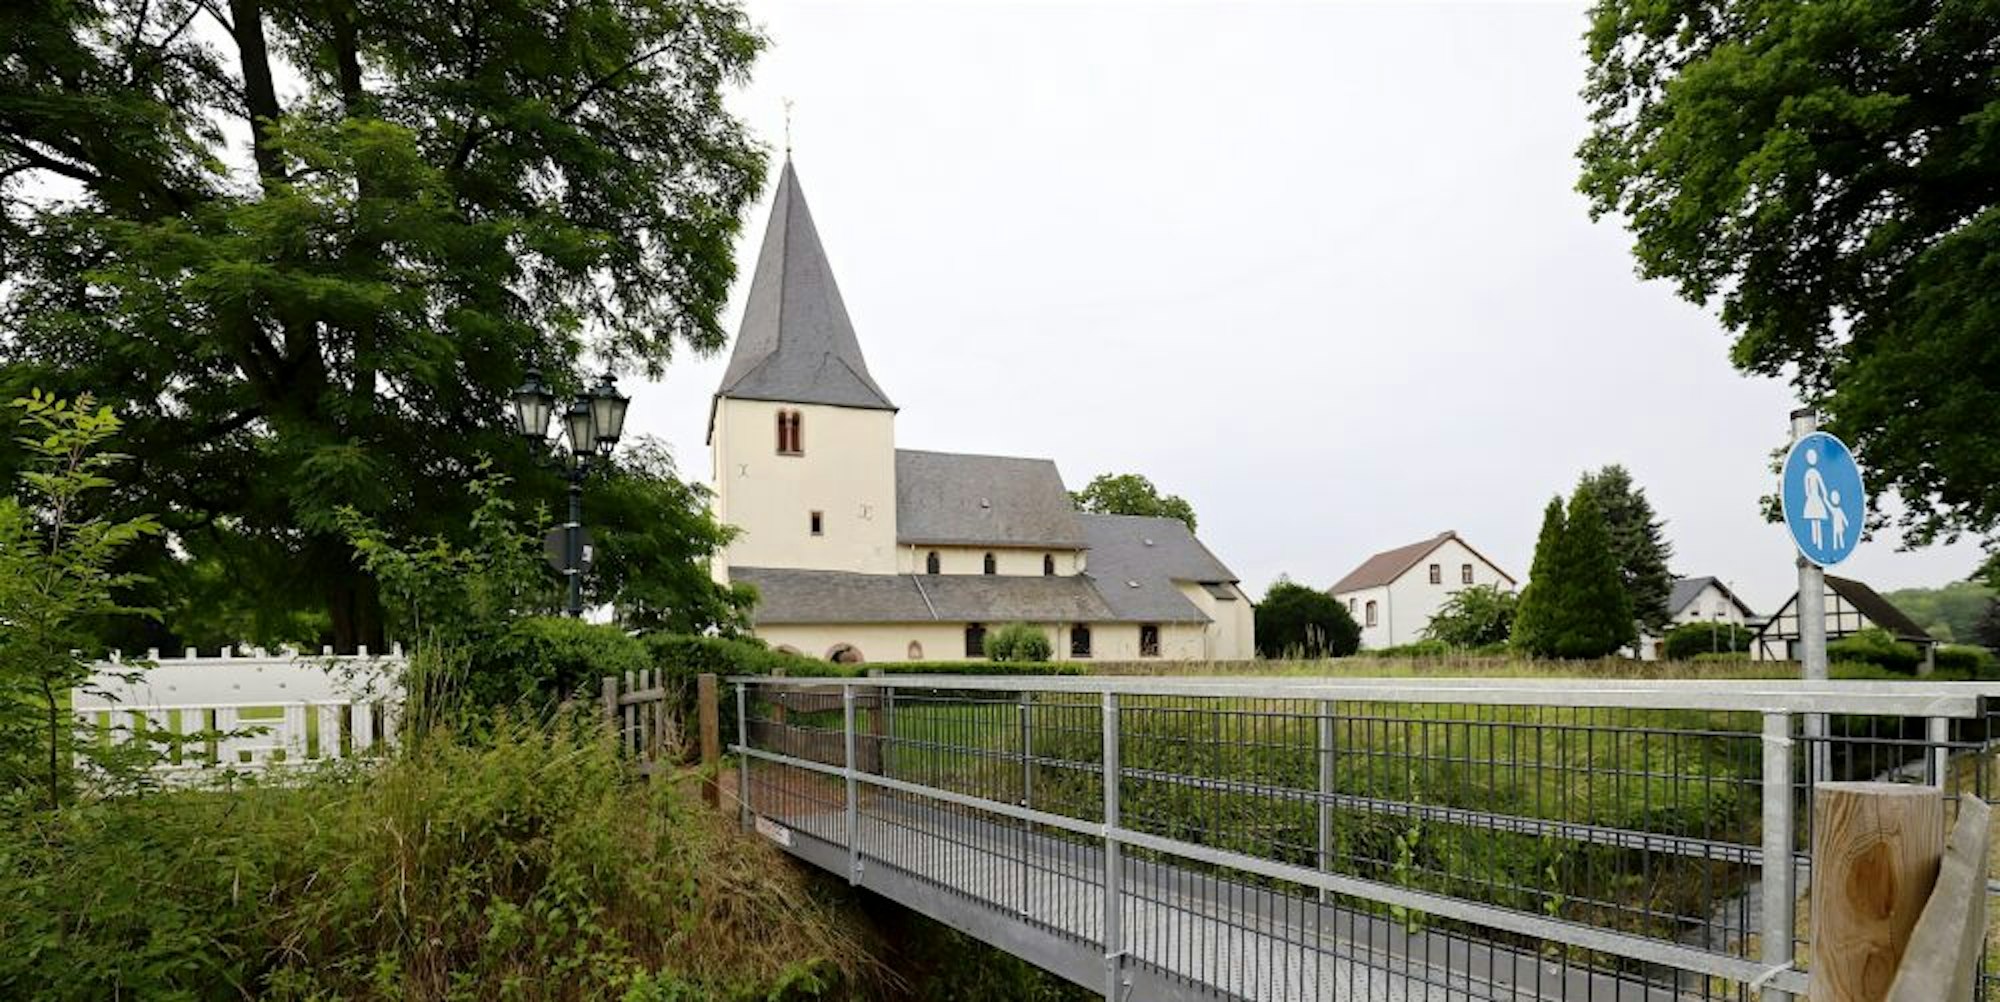 Die Behelfsbrücke an der Kirche in Vlatten soll auch weiterhin von den Fußgängern benutzt werden können.